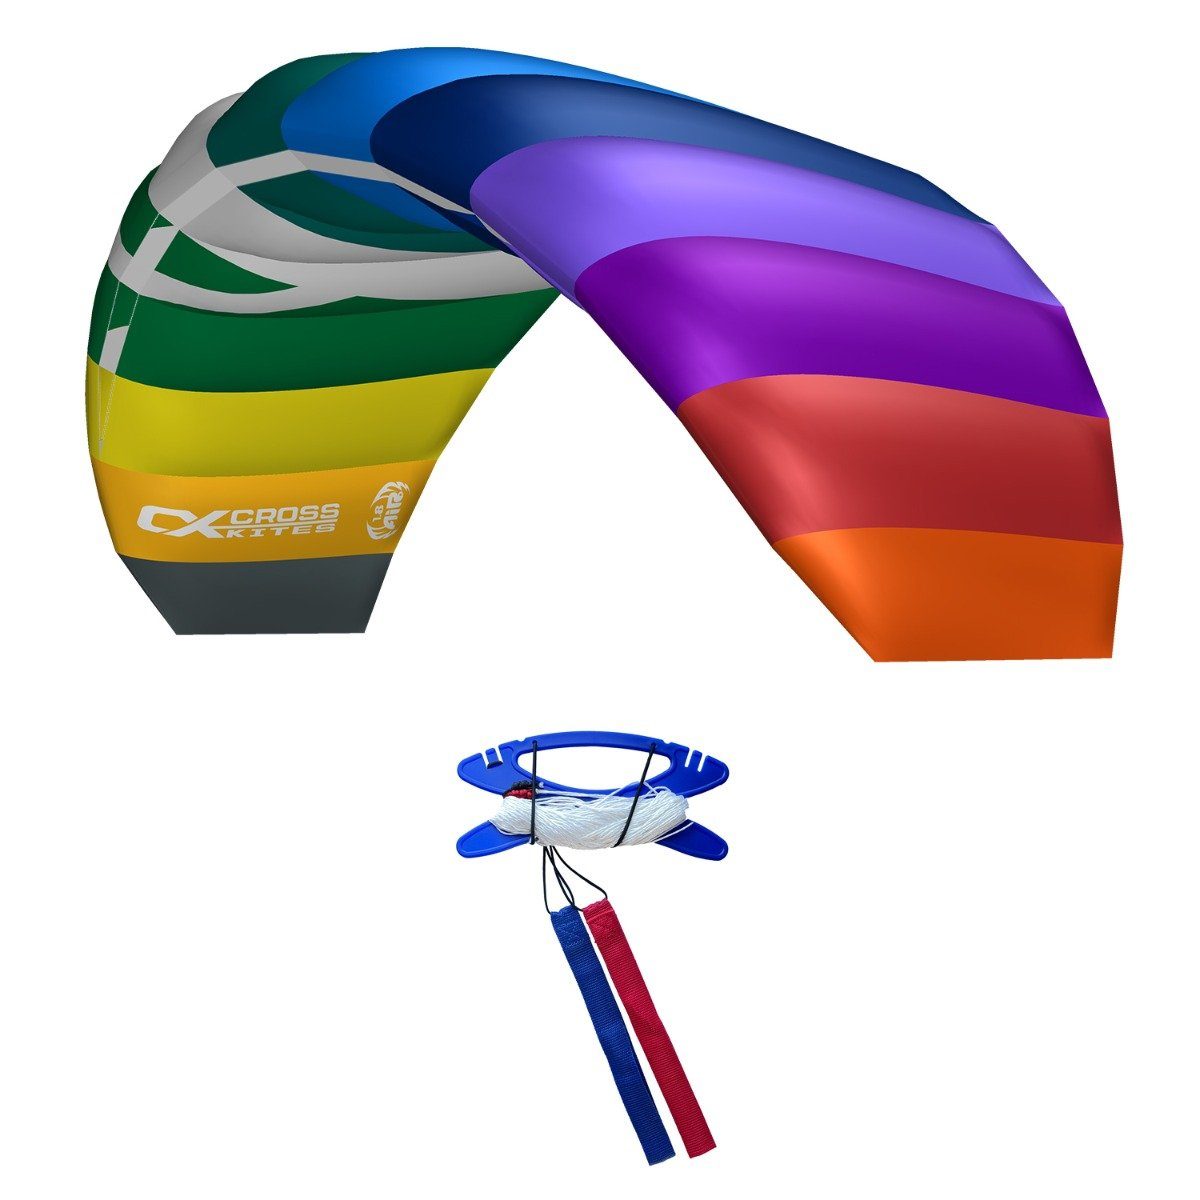 CrossKites Flug-Drache CrossKites Lenkmatte Air 1.8 Rainbow Allround, mit Lenkschlaufen und Leinen